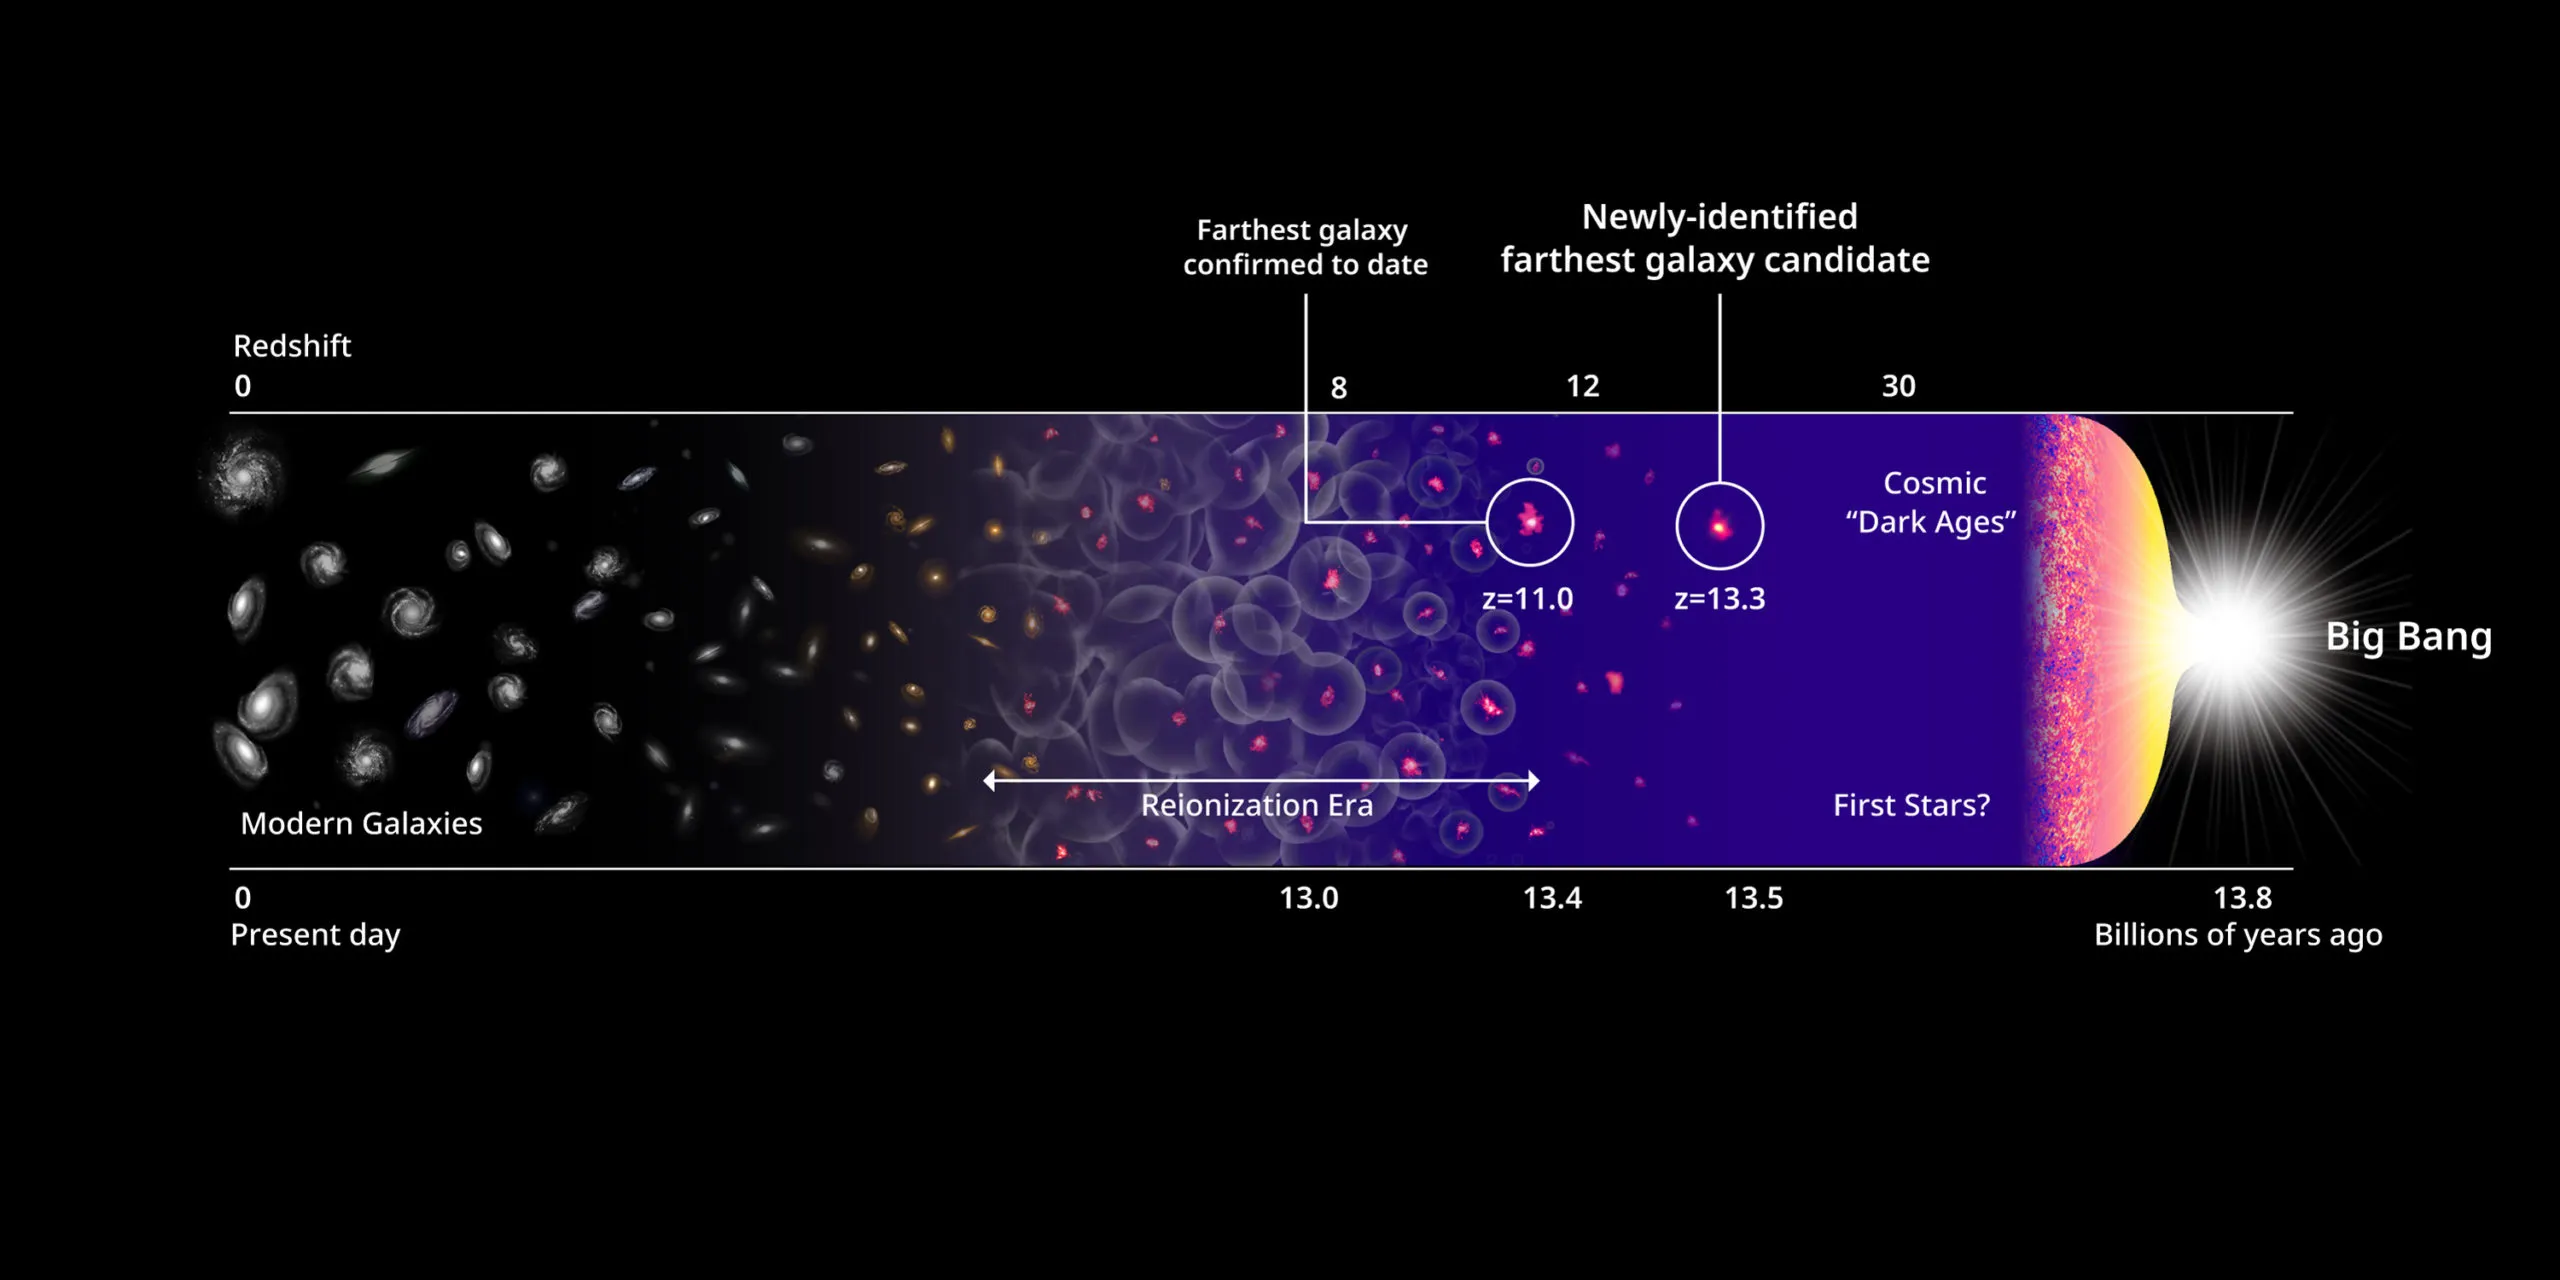 目前已确认最遥远的星系及新发现的最遥远候选星系。